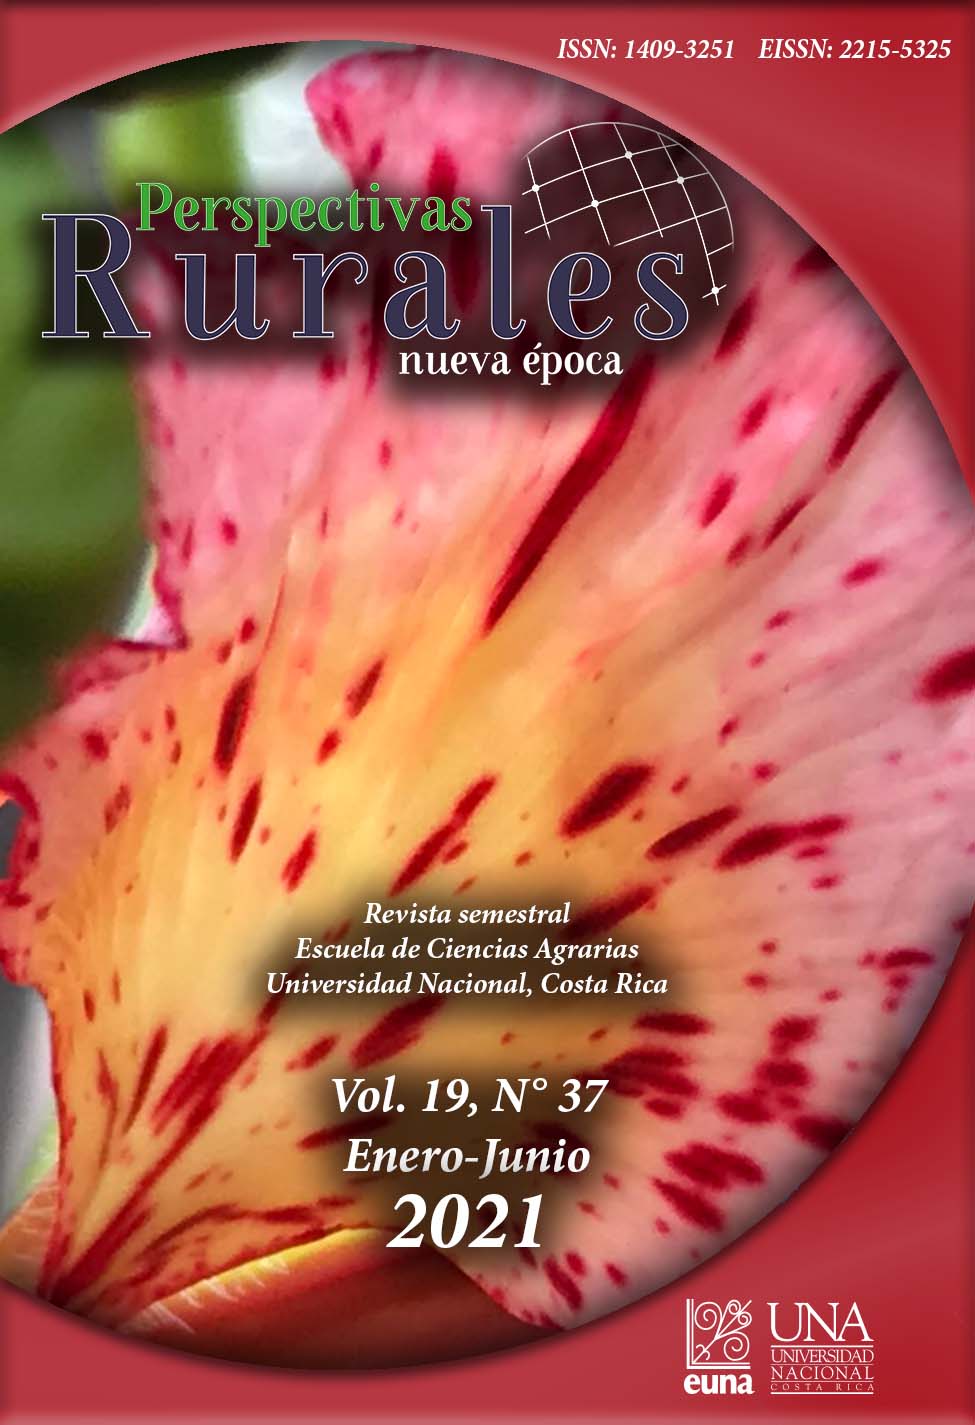 					Ver Vol. 19 Núm. 37 (2021): Revista Perspectivas Rurales Vol. 19 Núm. 37 (Enero - Junio 2021)
				